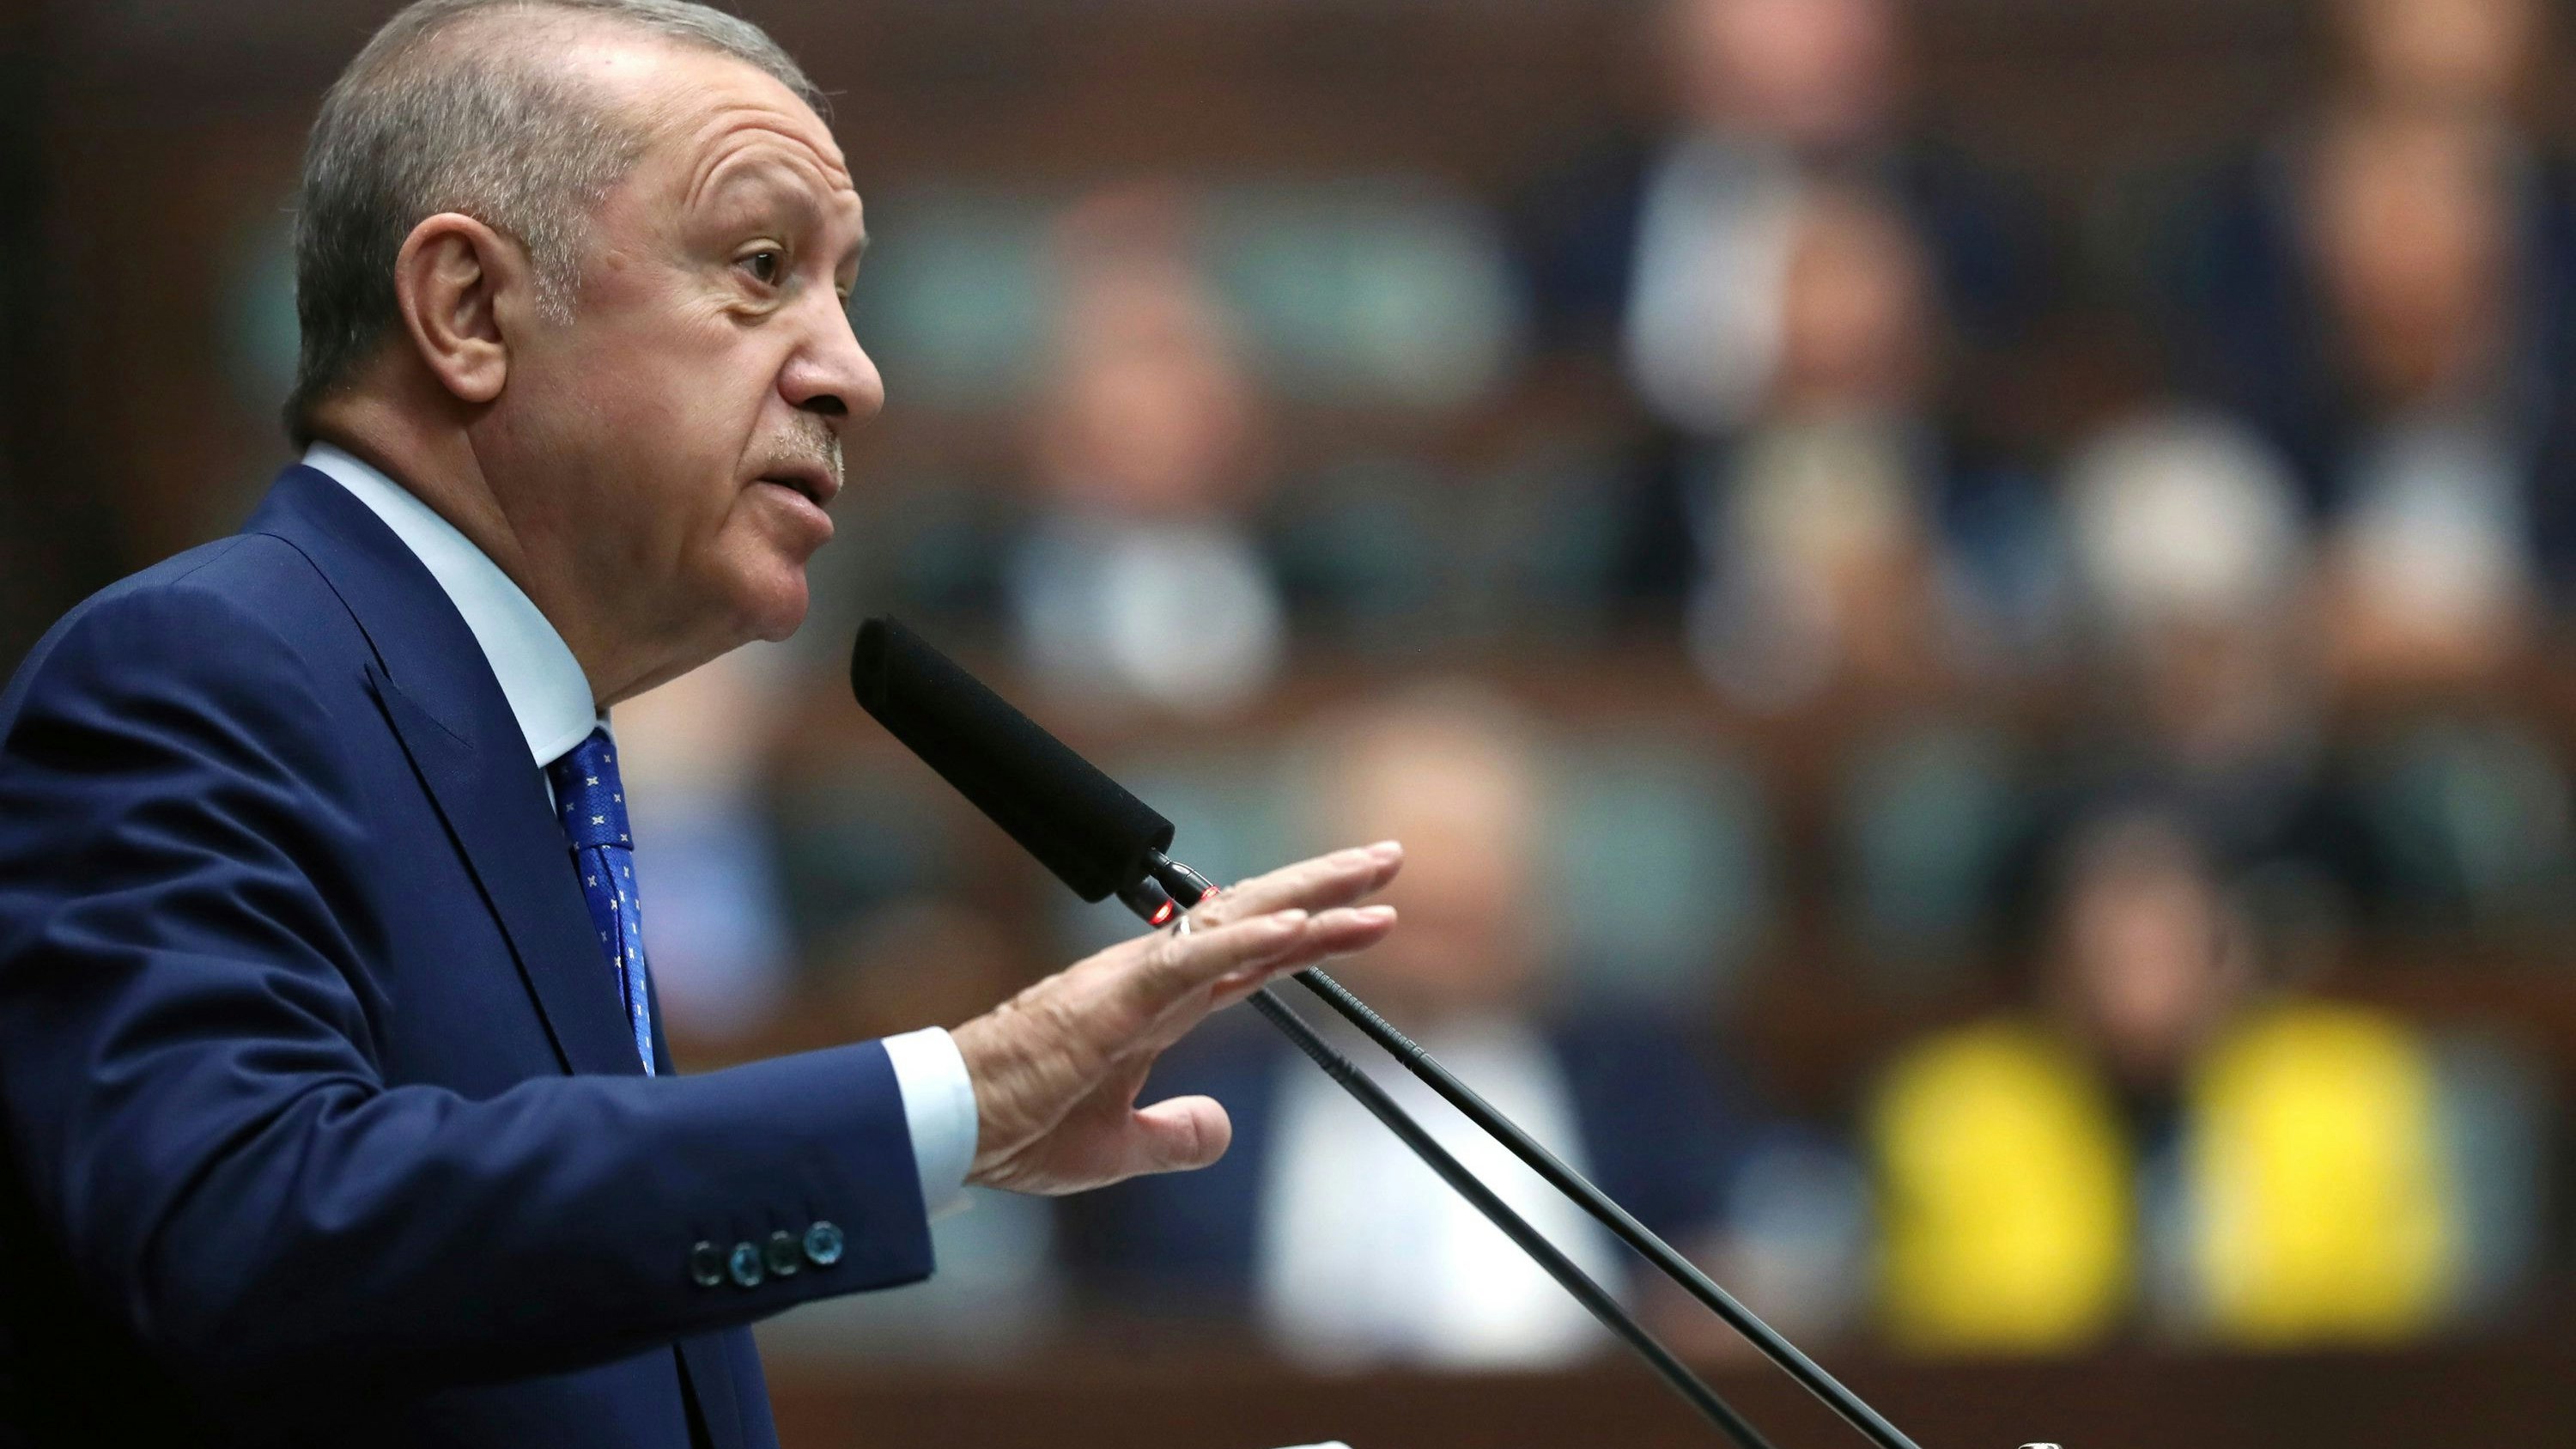 Stellt sich in den Weg: Der türkische Präsident Recep Tayyip Erdogan blockiert eine zügige Aufnahme Finnlands und Schwedens in die Nato. Foto: Uncredited/Turkisches Prasidialamt/dpa